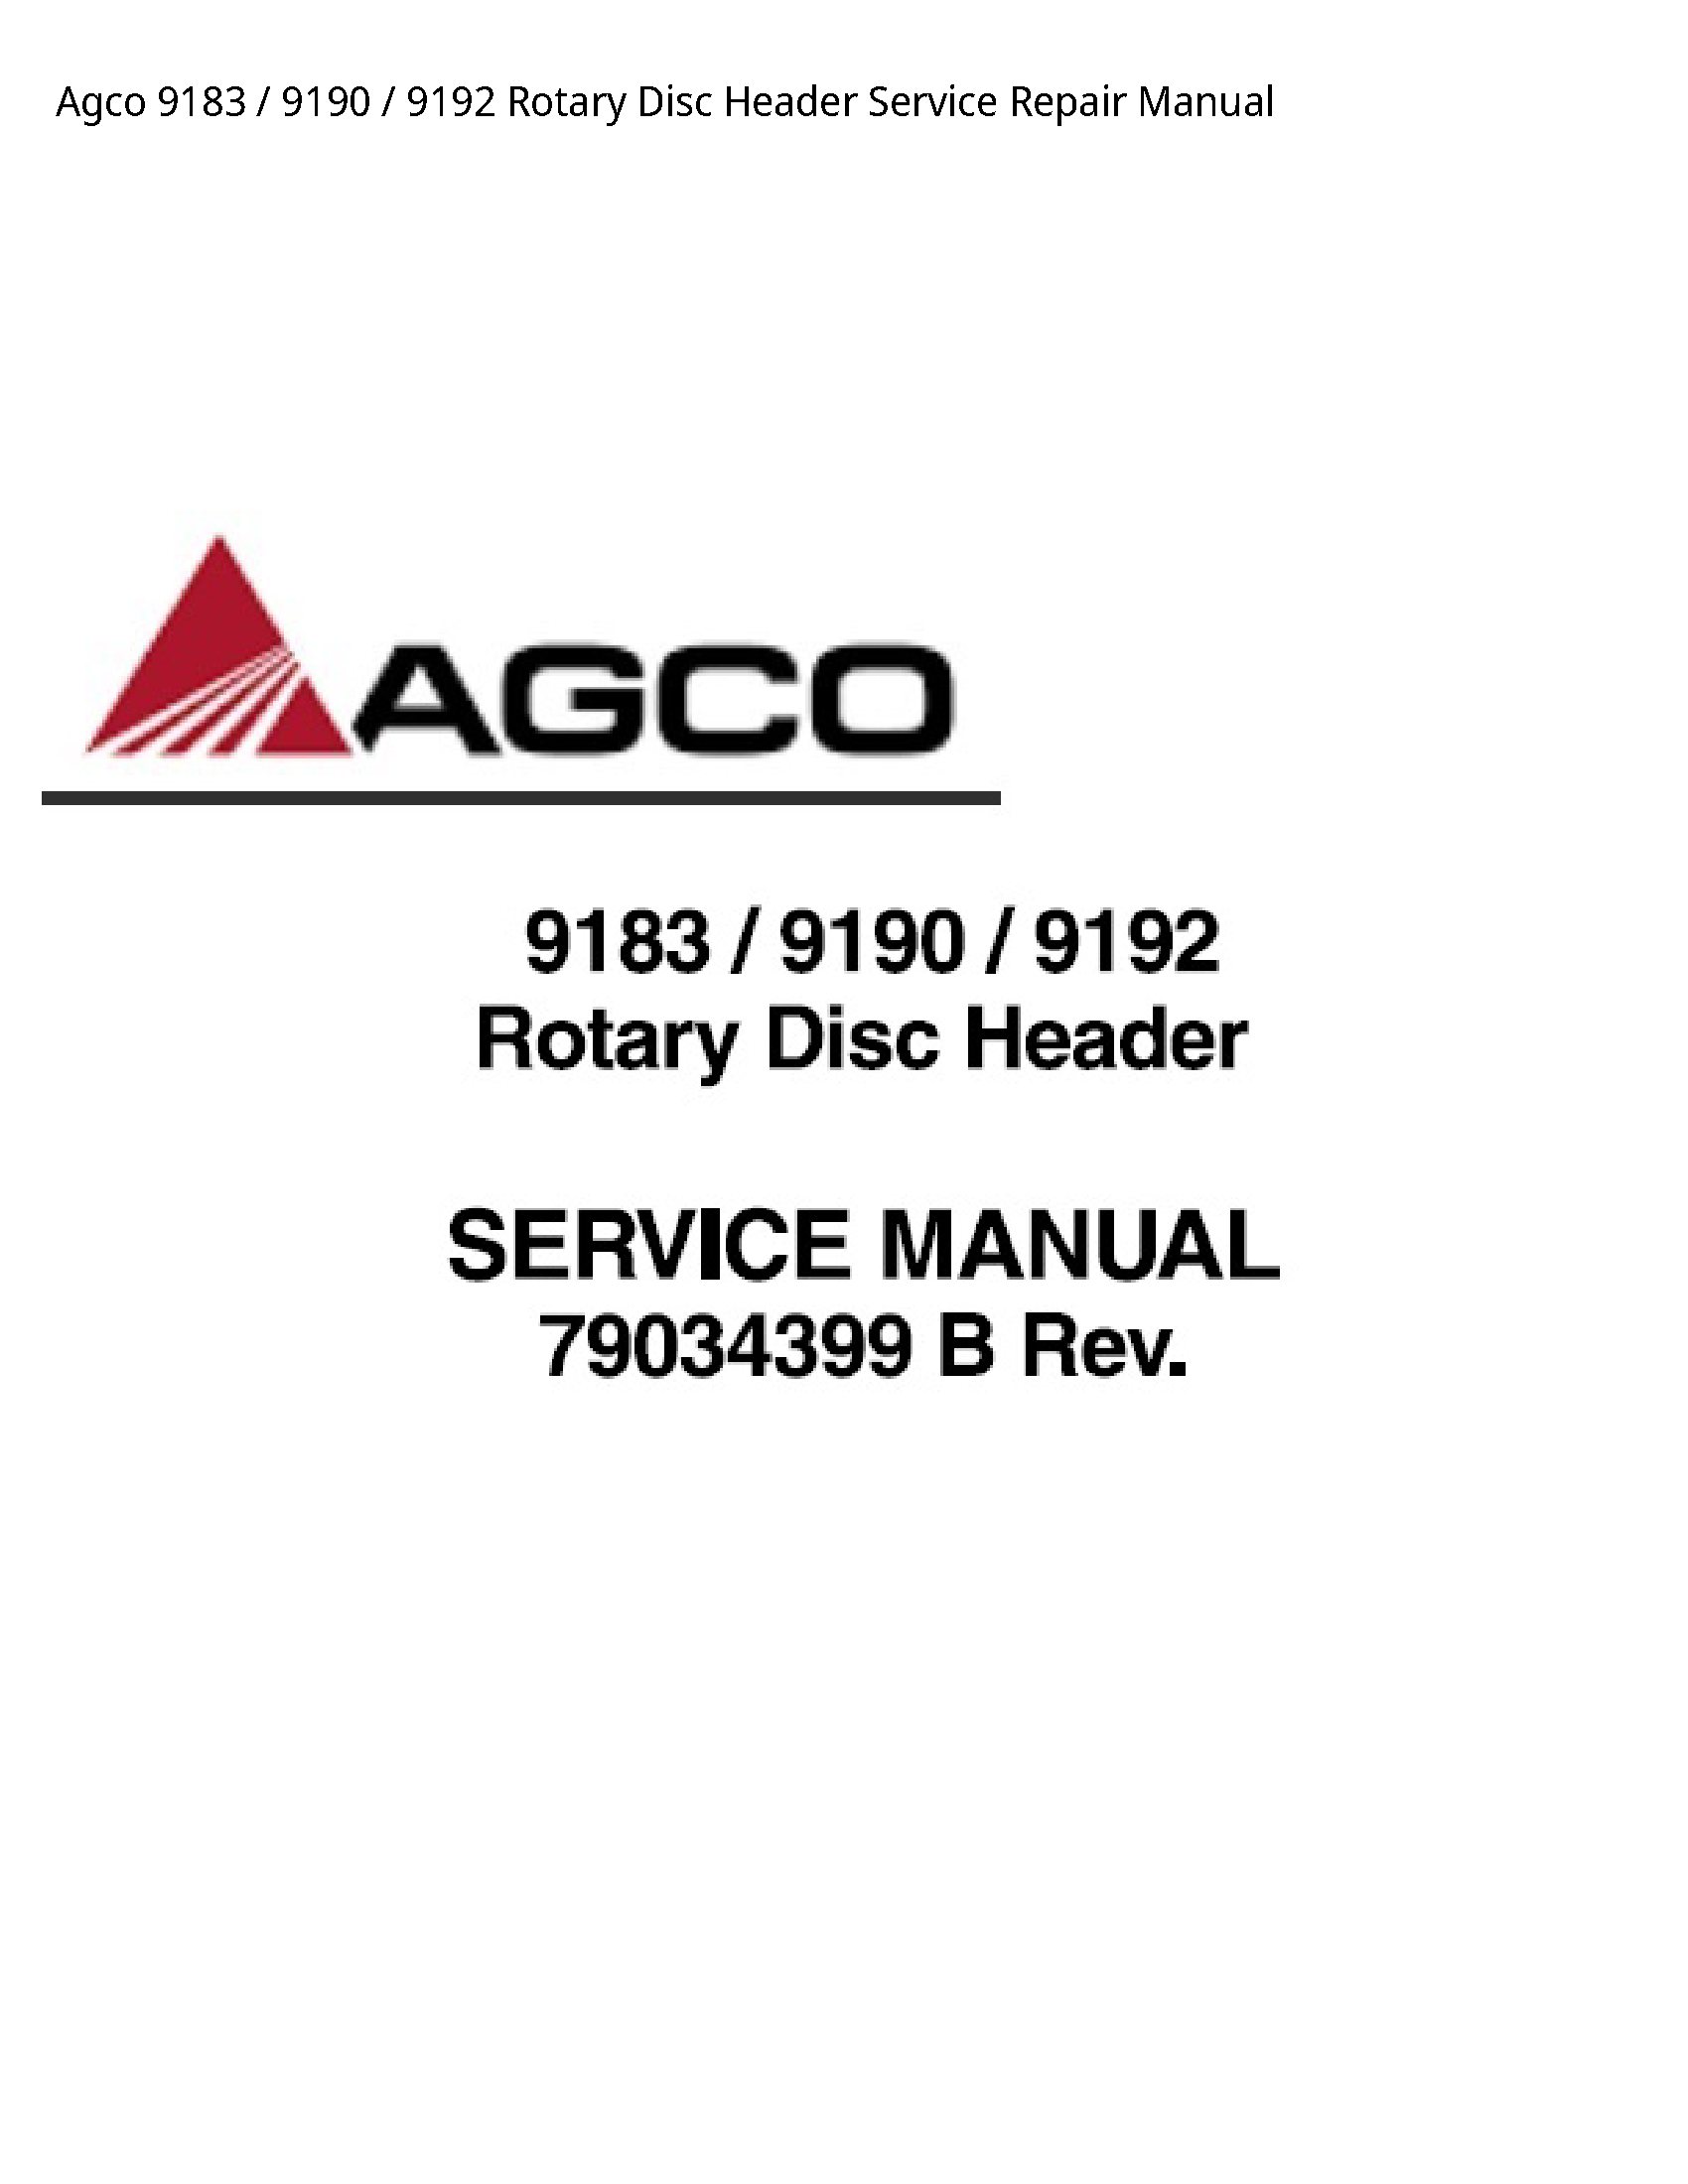 AGCO 9183 Rotary Disc Header manual